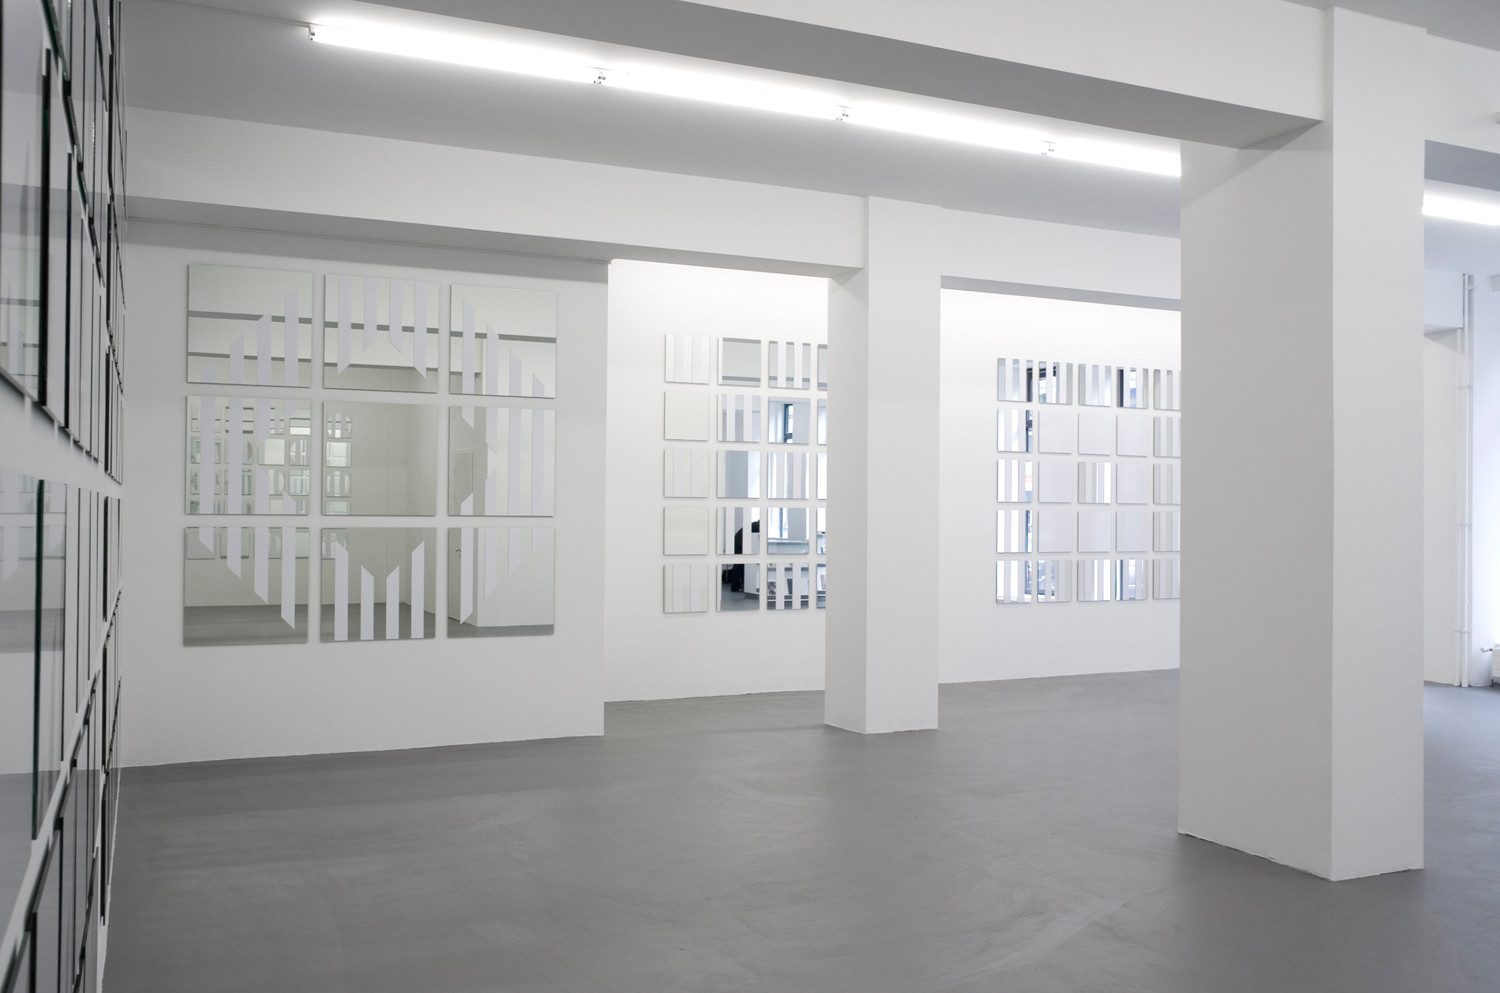 Daniel Buren, ‘voir se voir savoir’, Installation view, 2005